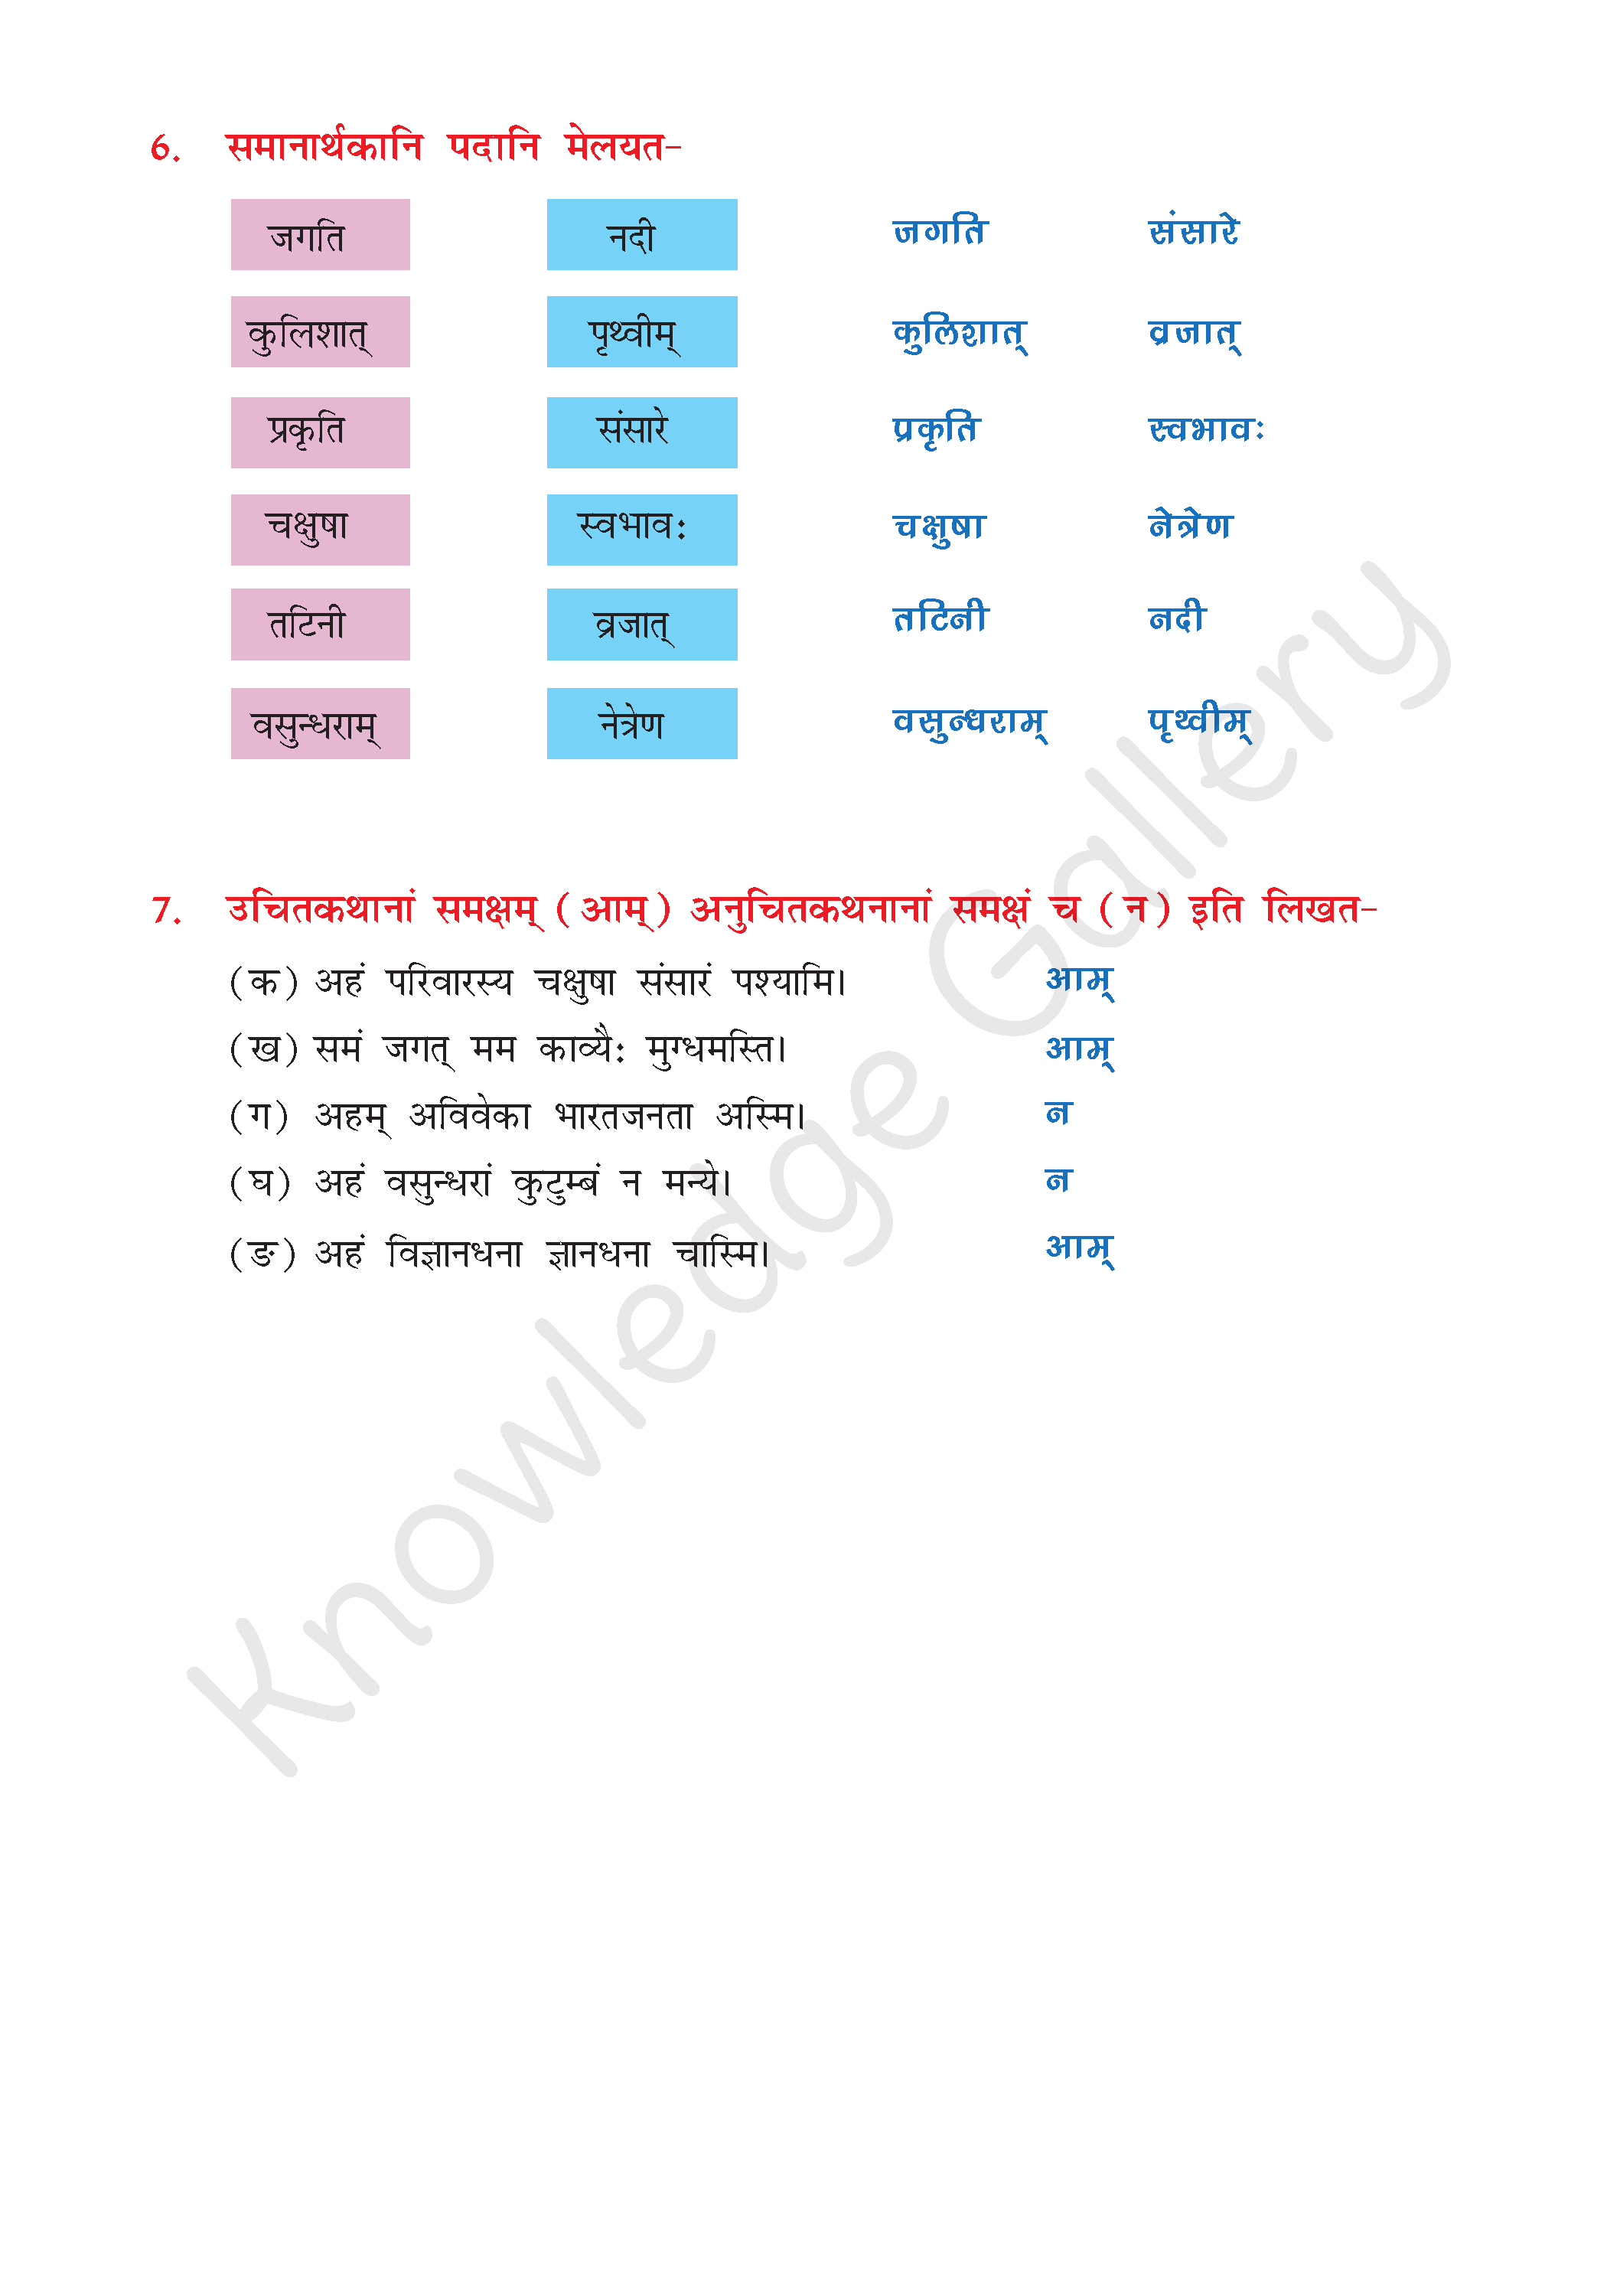 NCERT Solution For Class 8 Sanskrit Chapter 7 part 5